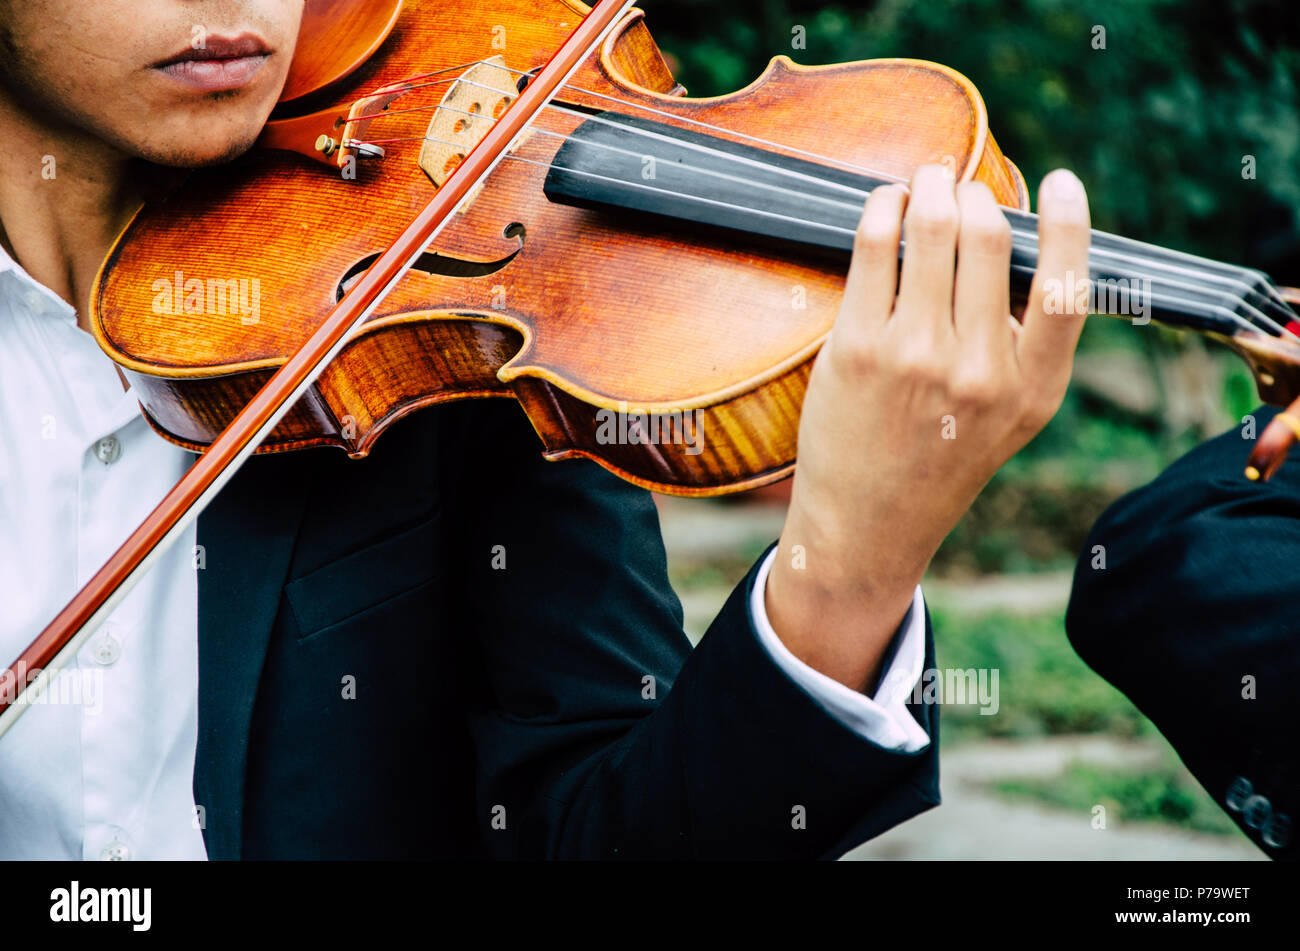 El arte y el artista. Hombre elegante joven violinista a tocar el violín en negro. Música clásica. chico instrumento musical. Foto de stock